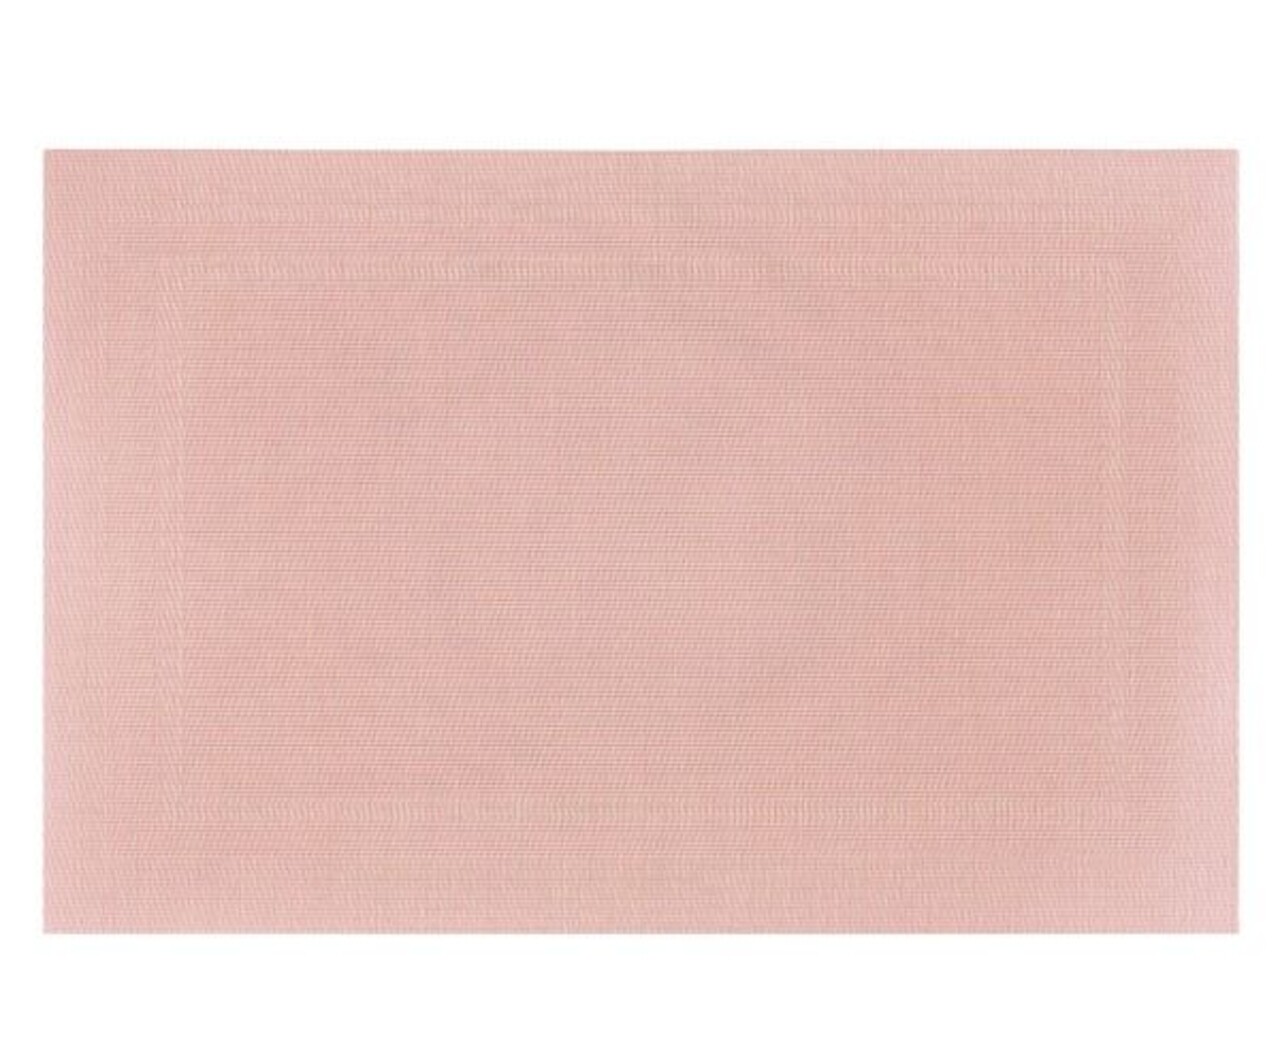 Sweet Tányéralátét, Ambition, 30x45 cm, PVC, rózsaszín